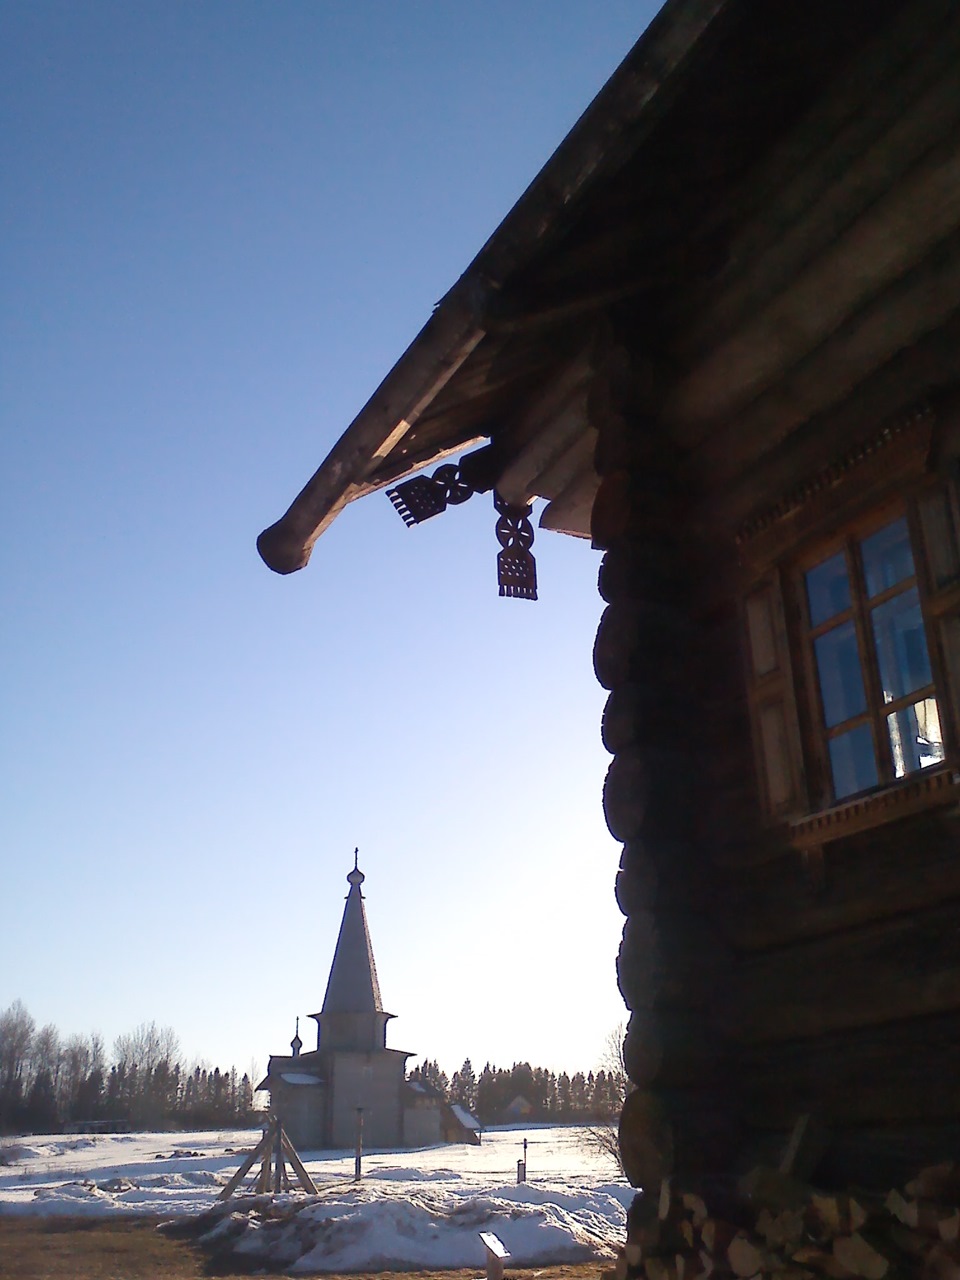 Arhitectura rusă din lemn